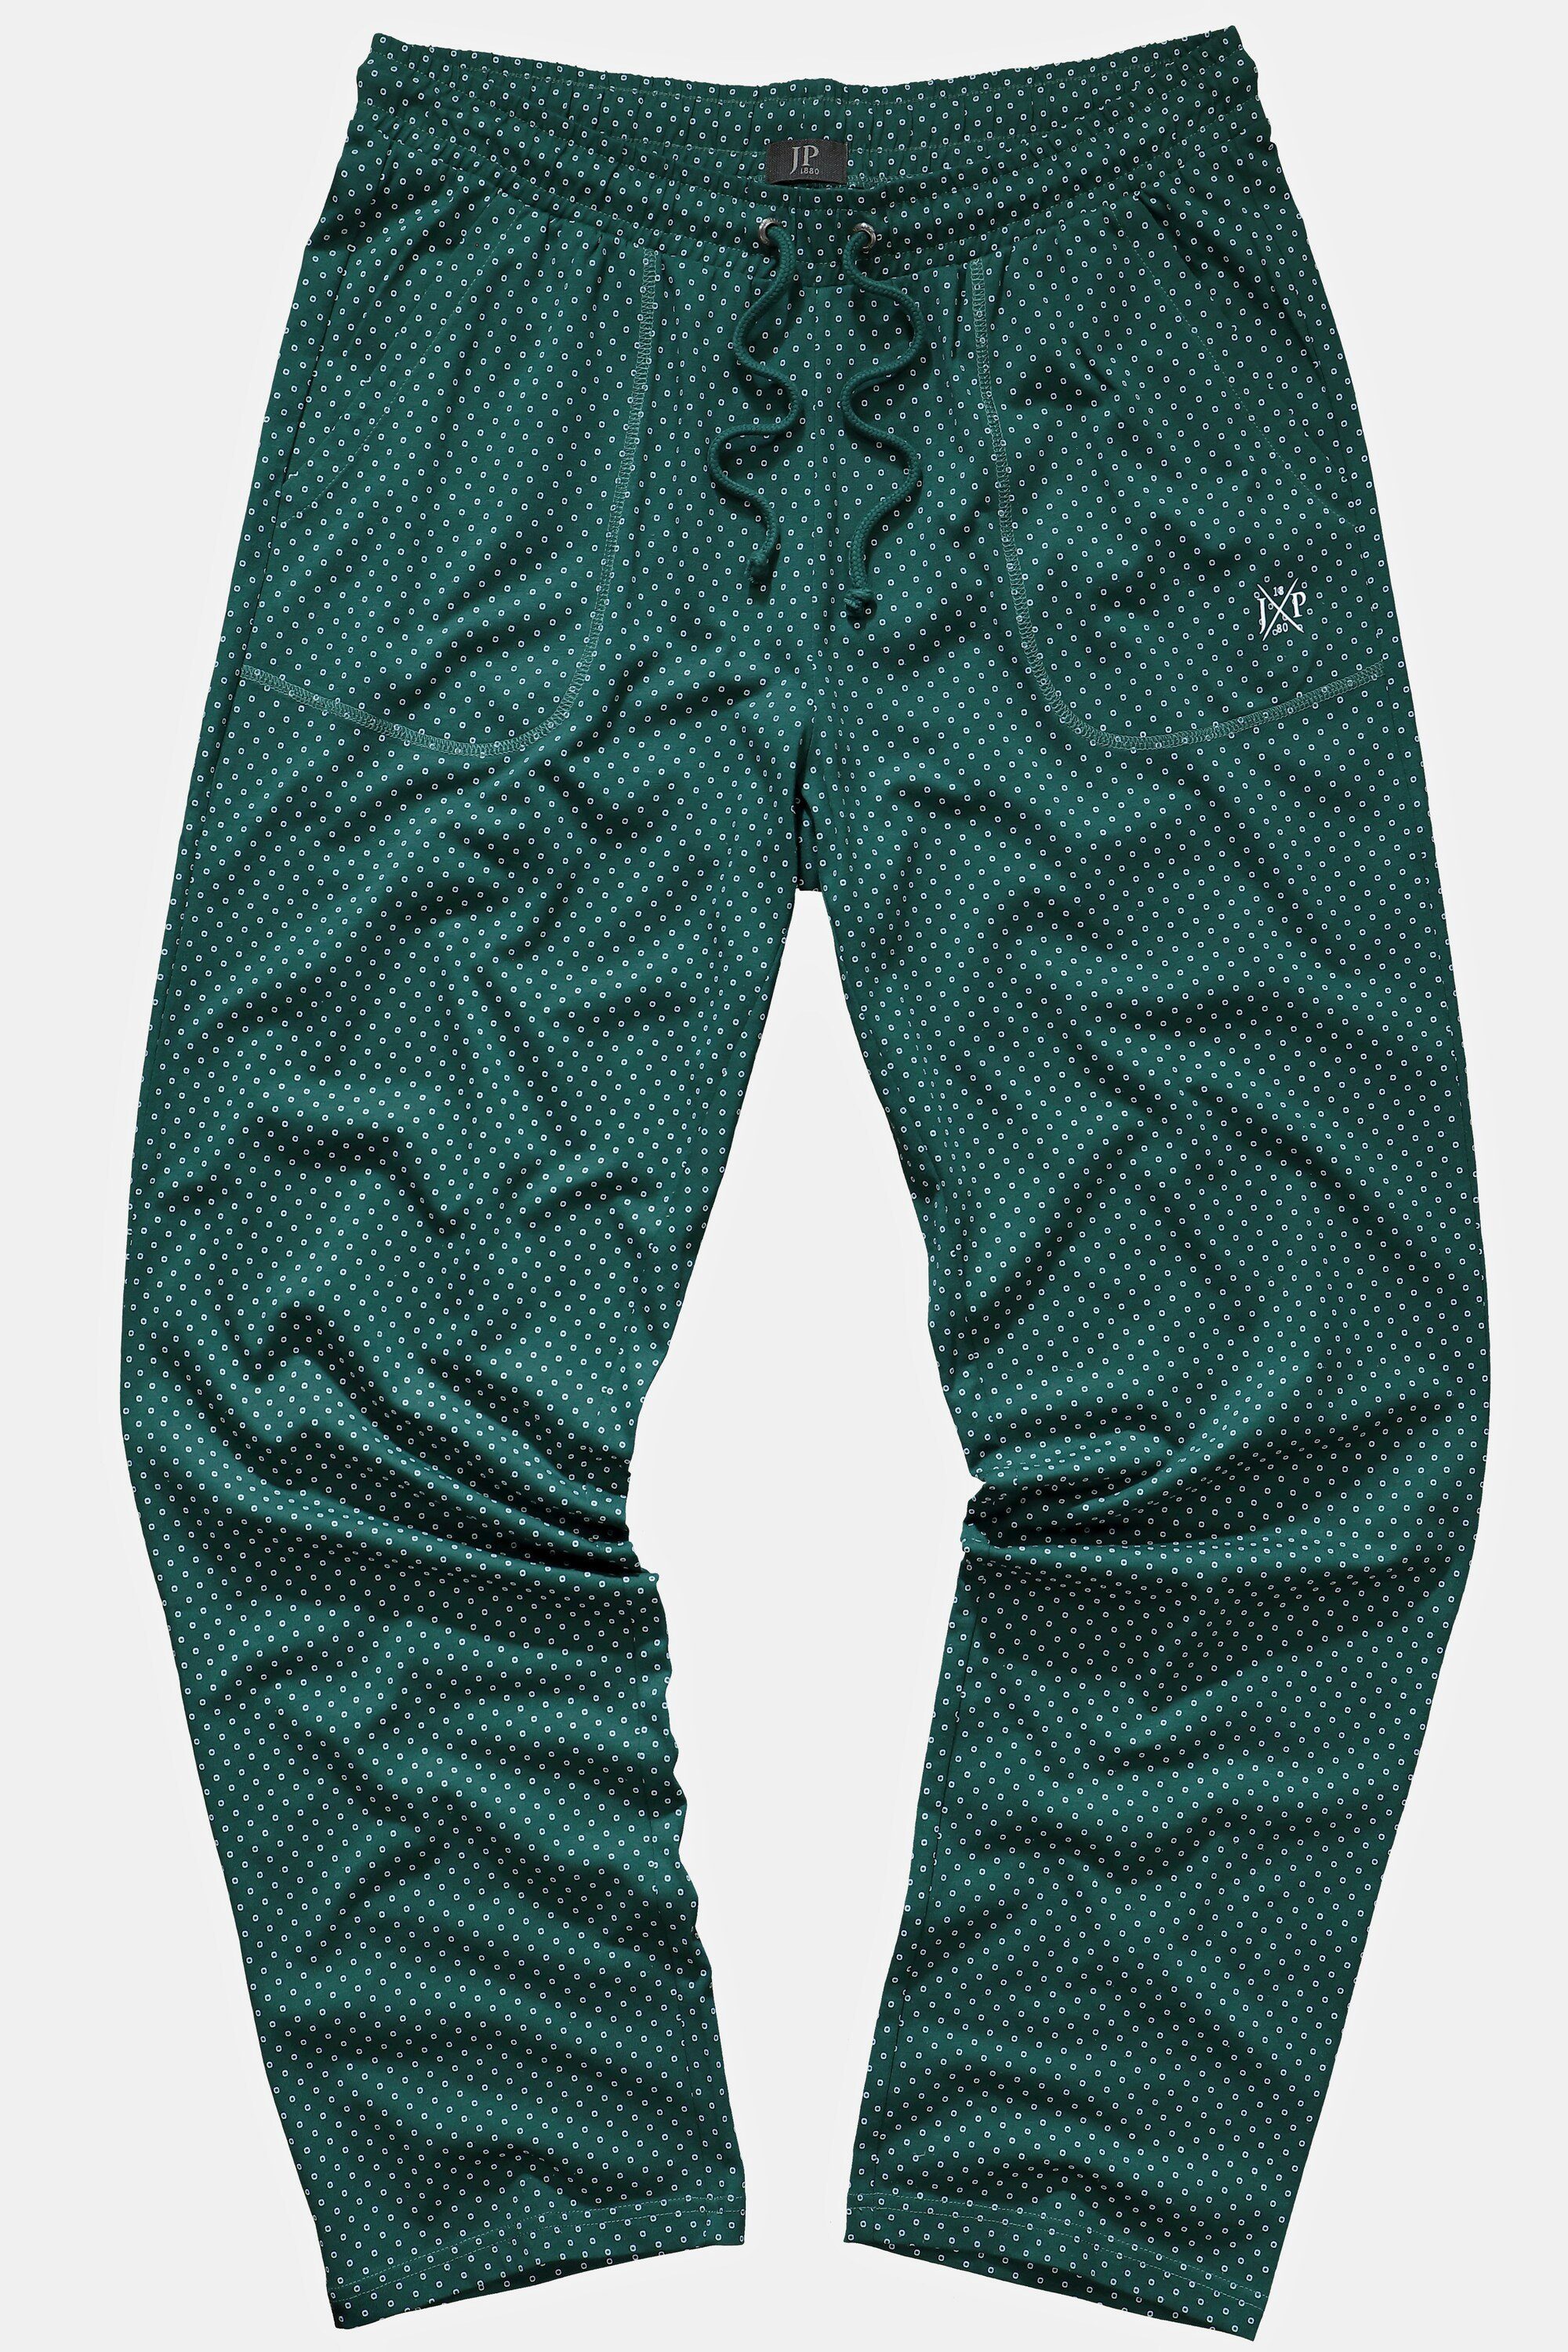 Elastikbund Schlafanzug-Hose Muster Schlafanzug JP1880 Minimal